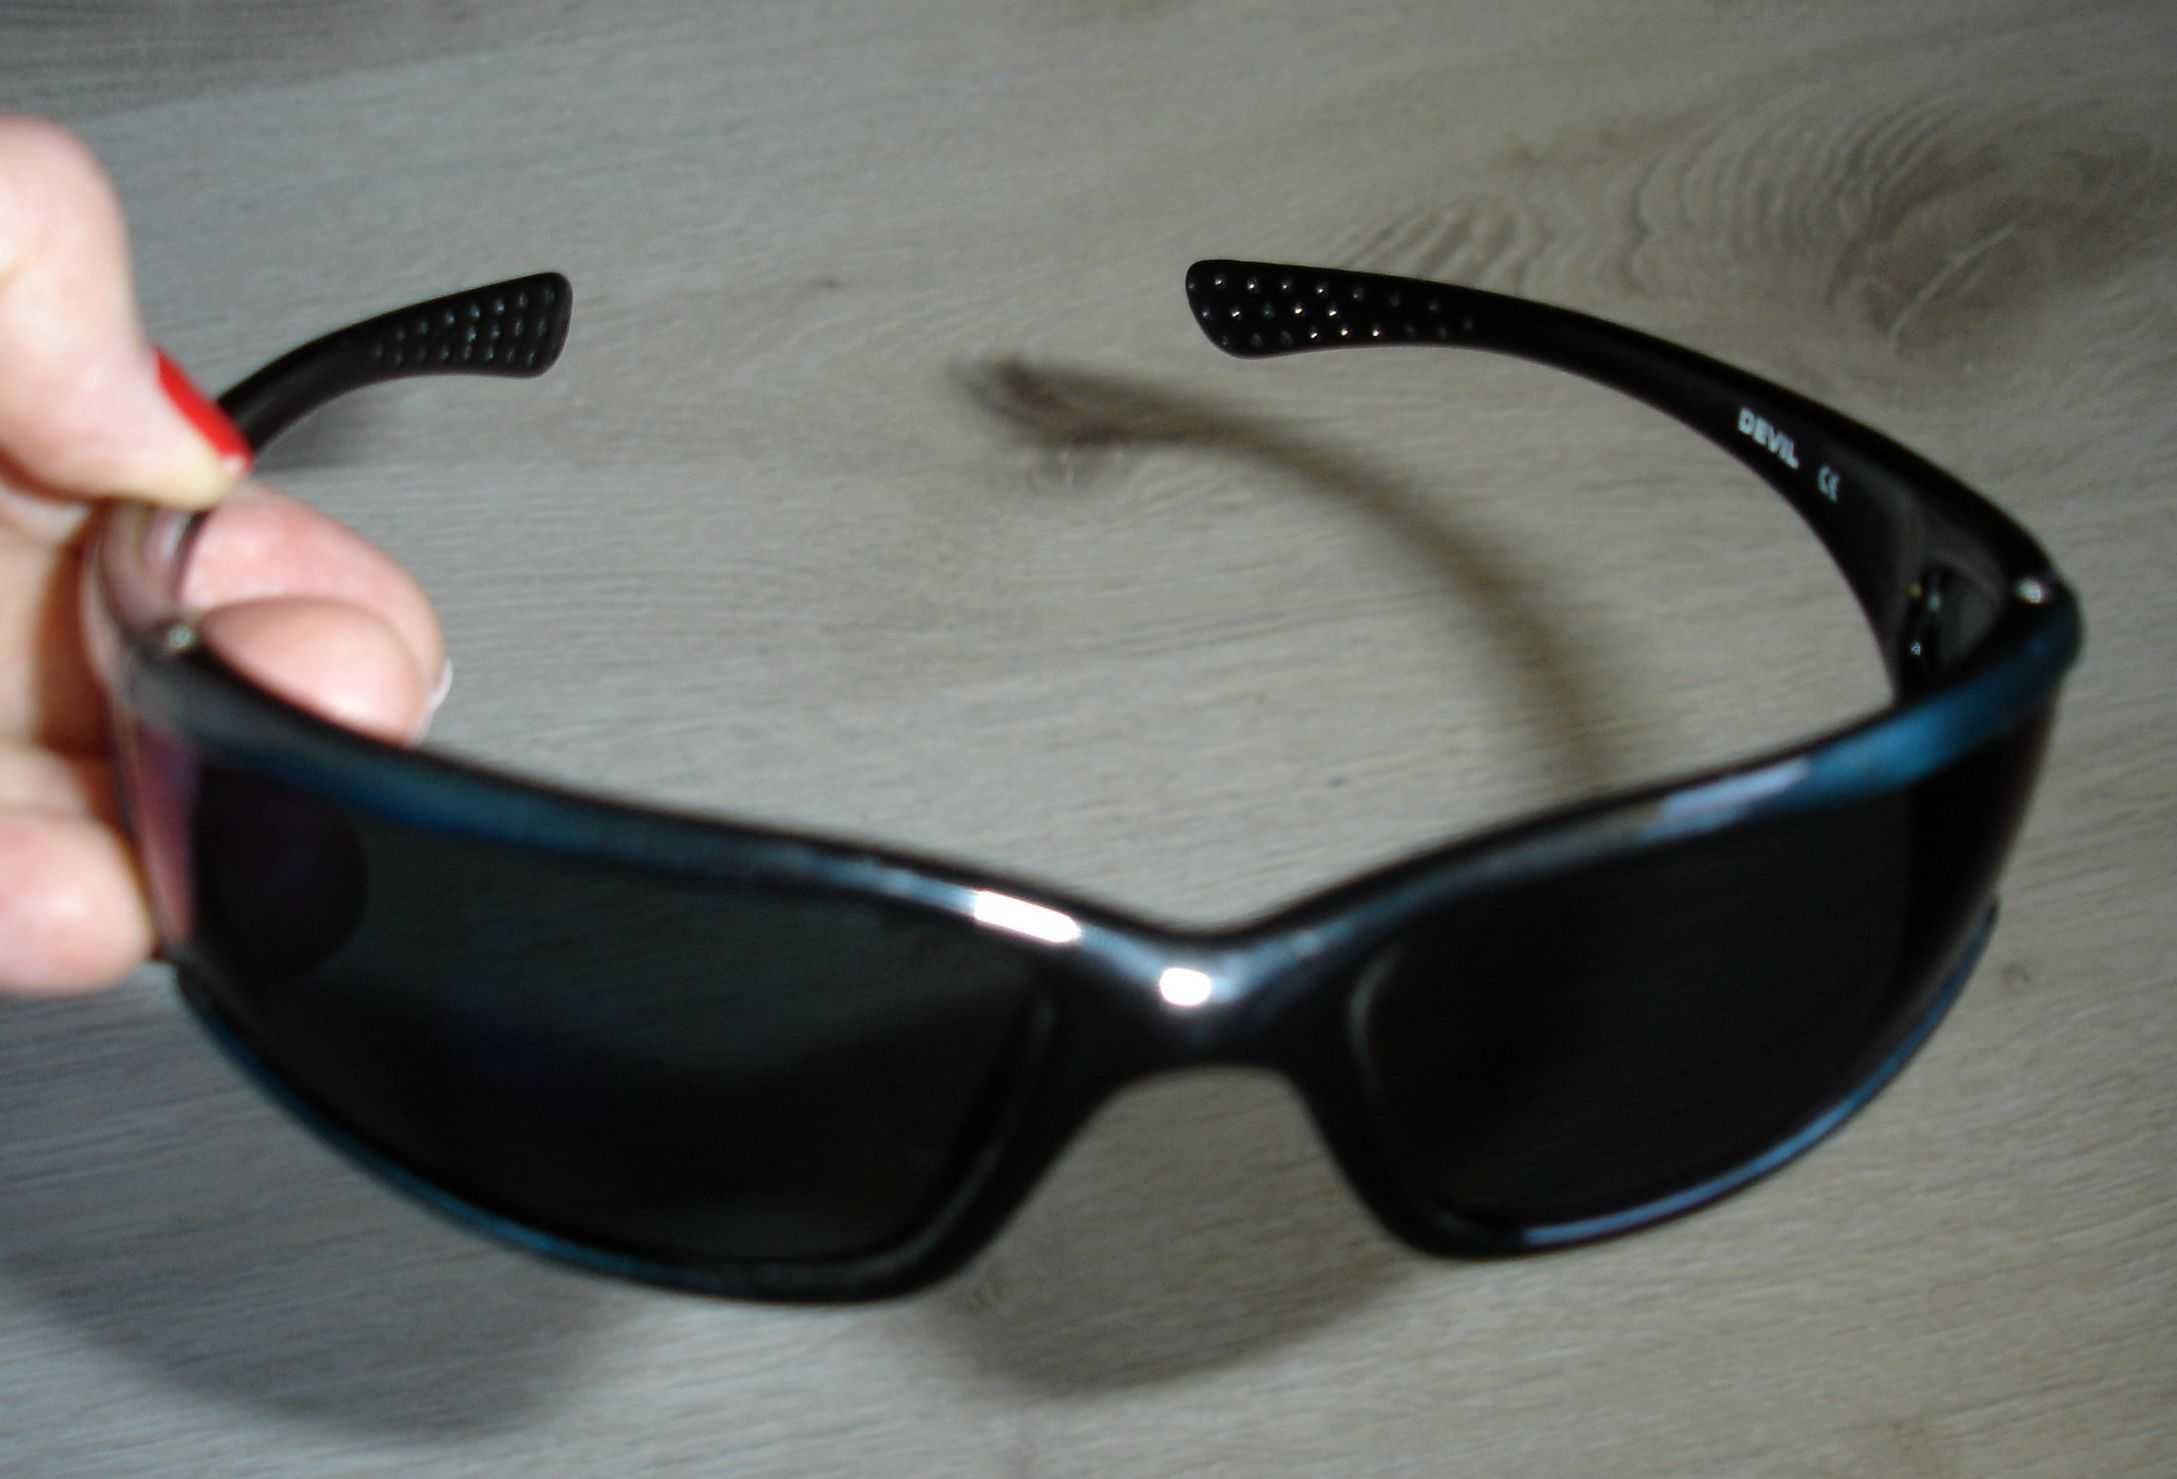 Okulary przeciwsłoneczne ARCTICA S-66A. Filtr UV 400.